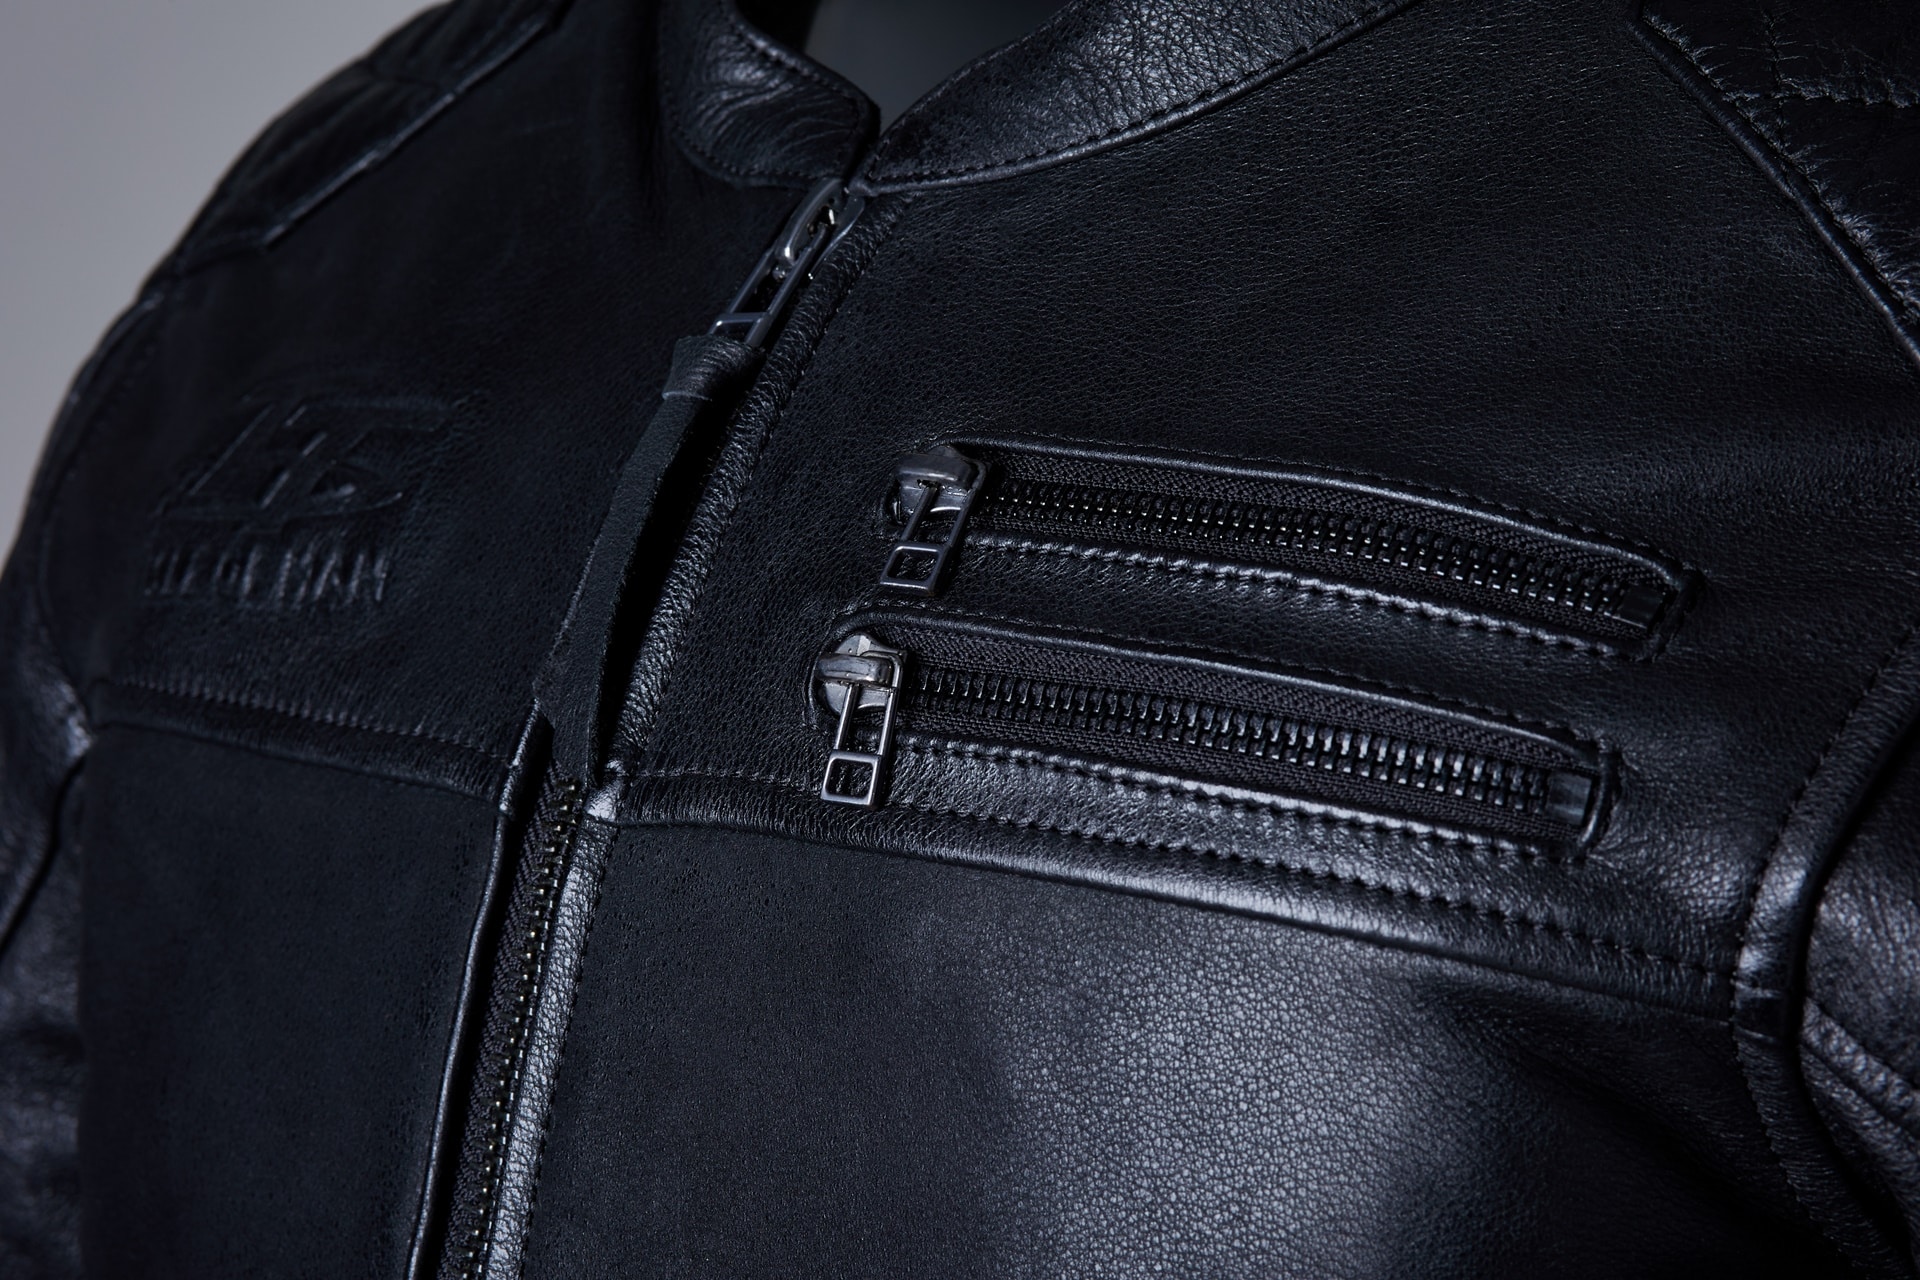 RST presenta tres nuevas versiones de sus chaquetas más célebres